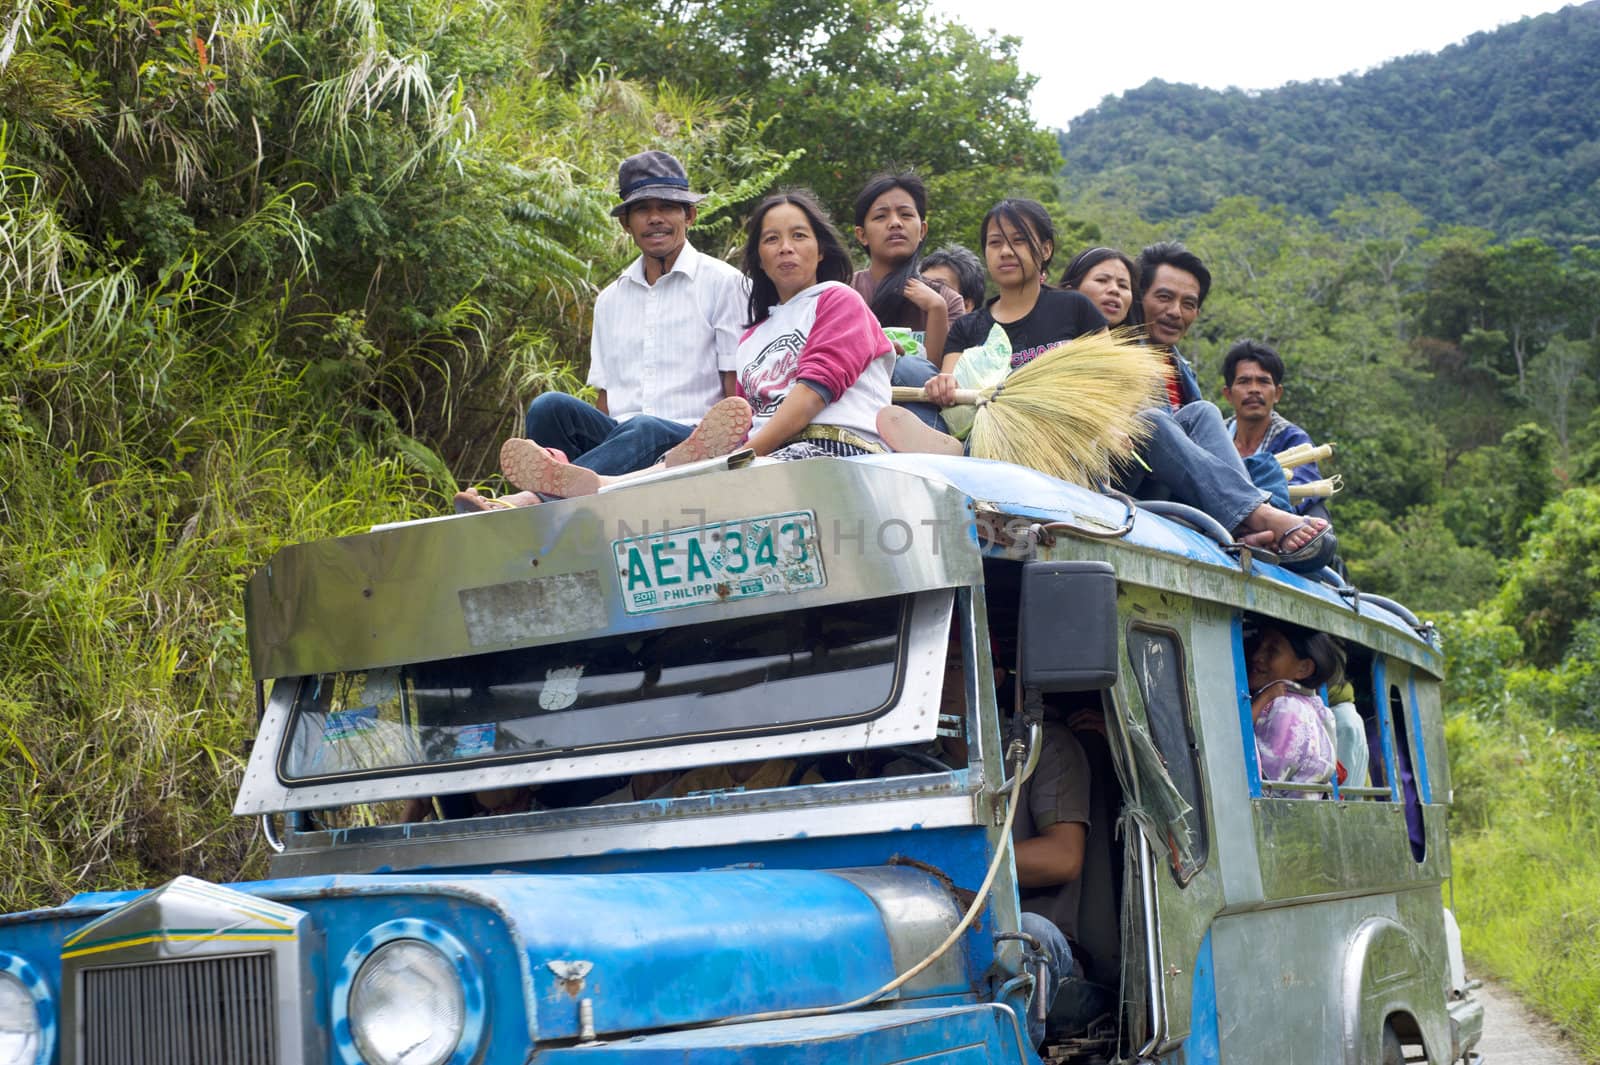 Overflowing Jeepney by joyfull